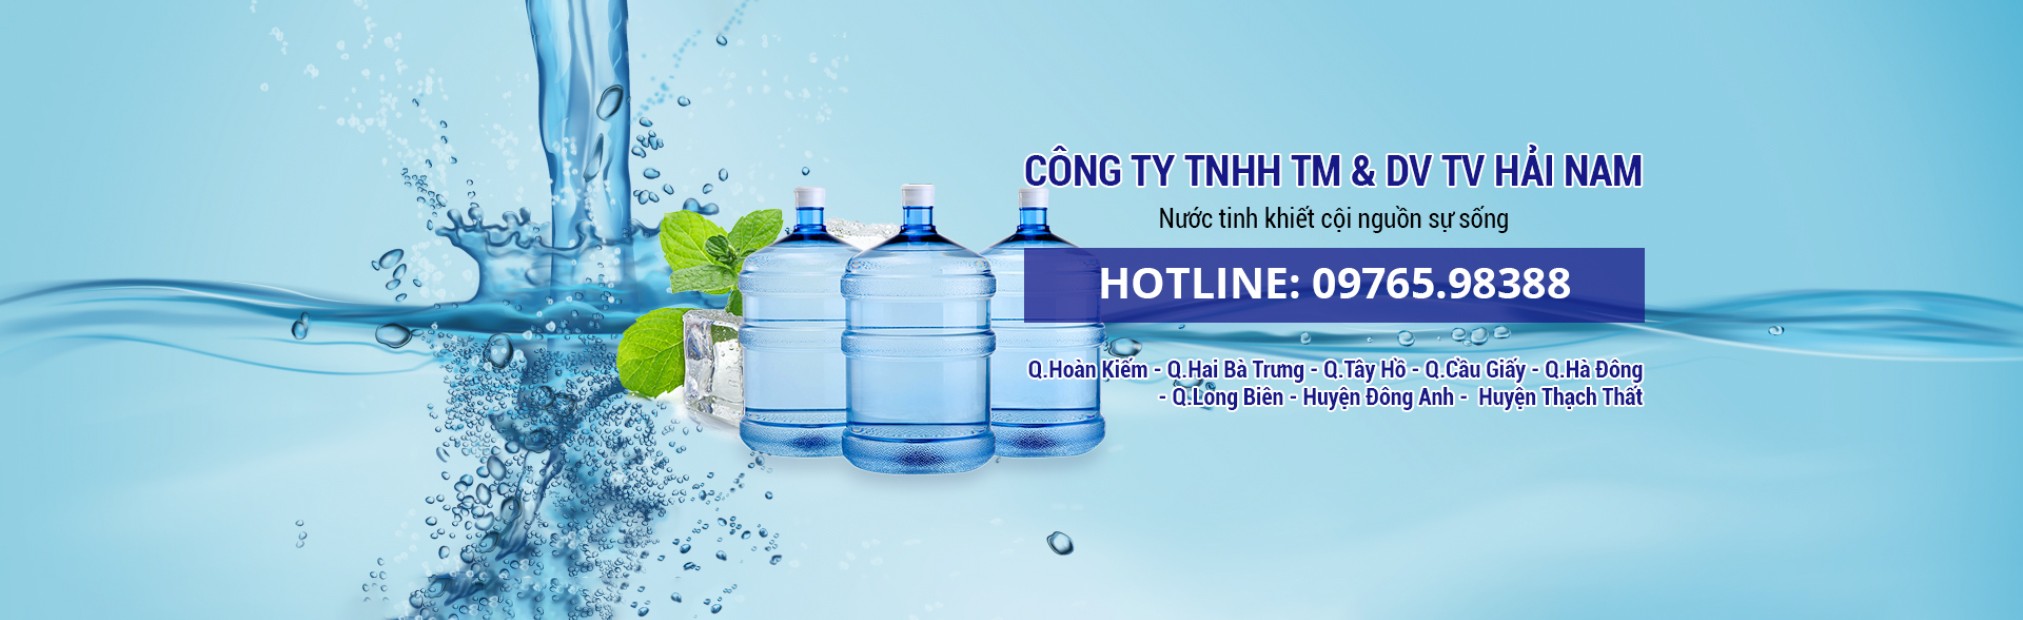 Giao nước uống tận nhà tại Hà Nội